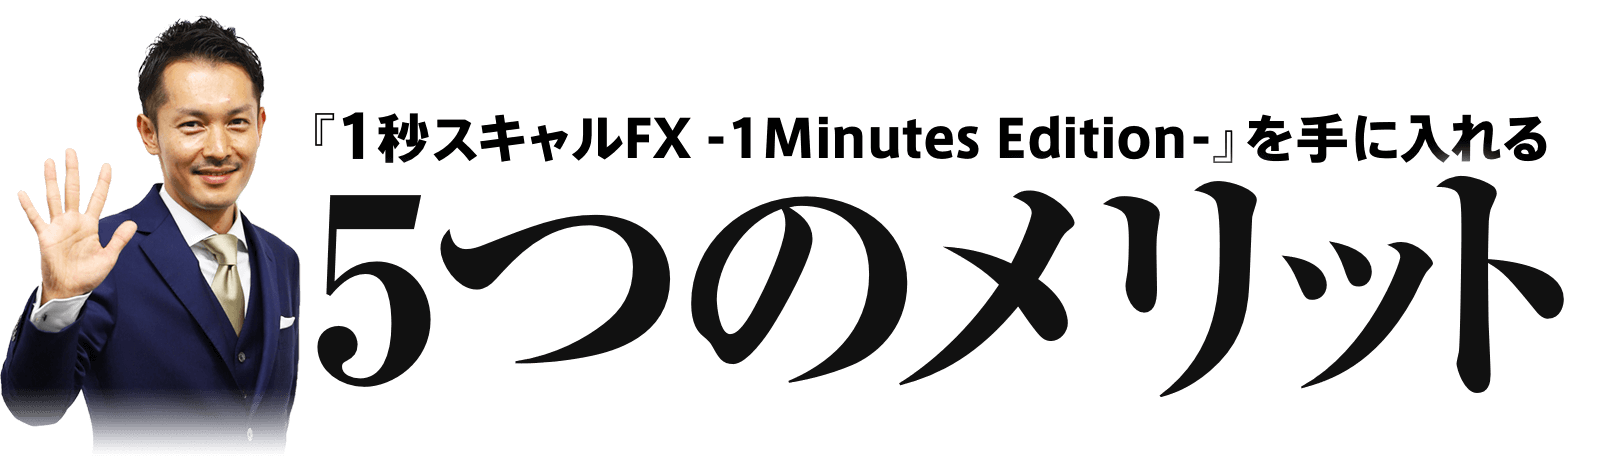 『1秒スキャルFX - 1 Minutes Edition -』を手に入れる5つのメリット